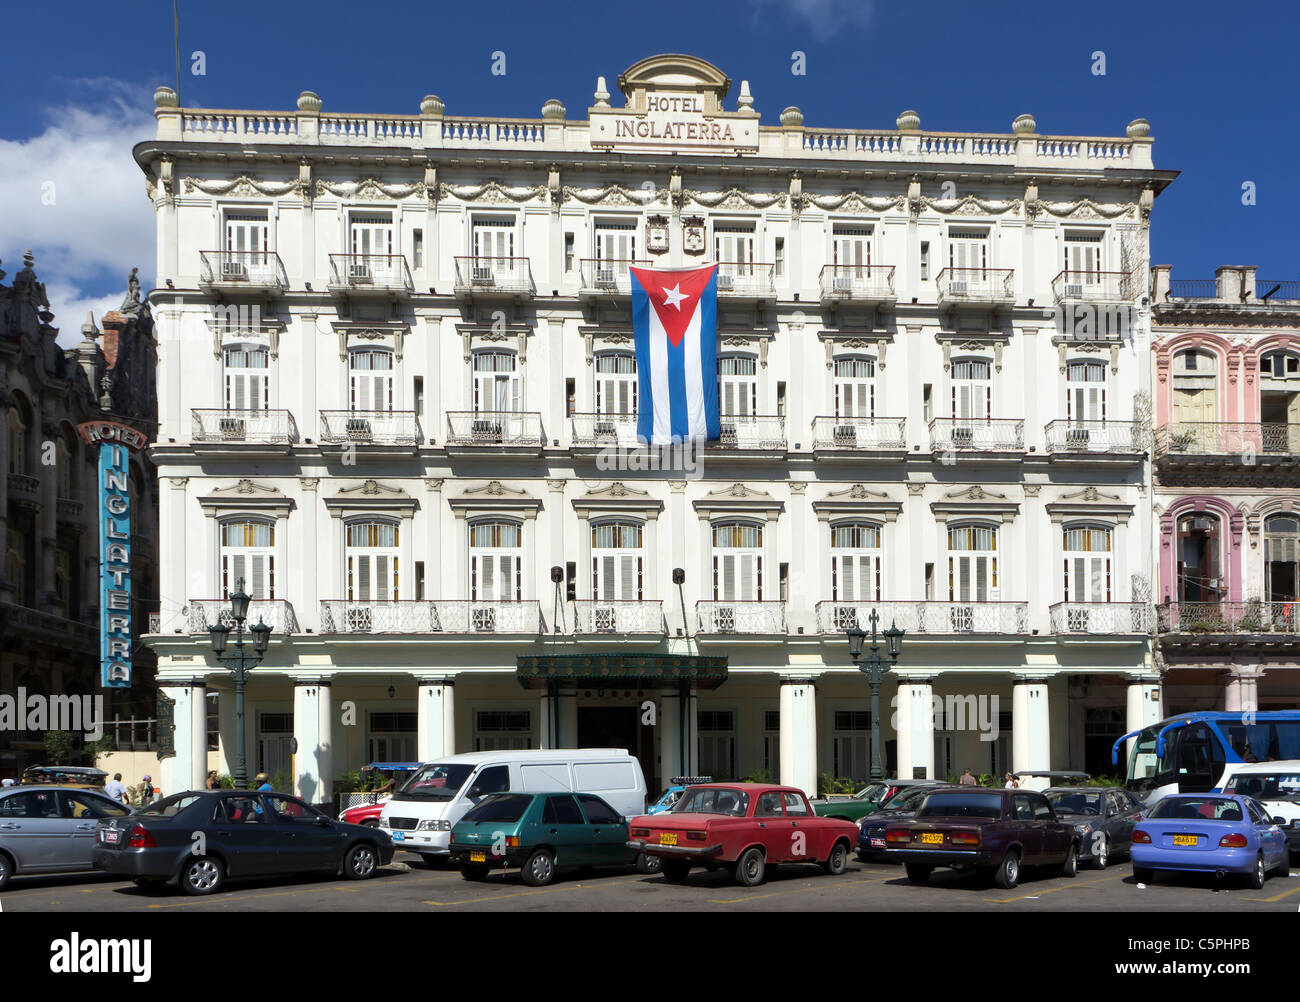 L'hôtel Inglaterra, La Havane, Cuba Banque D'Images